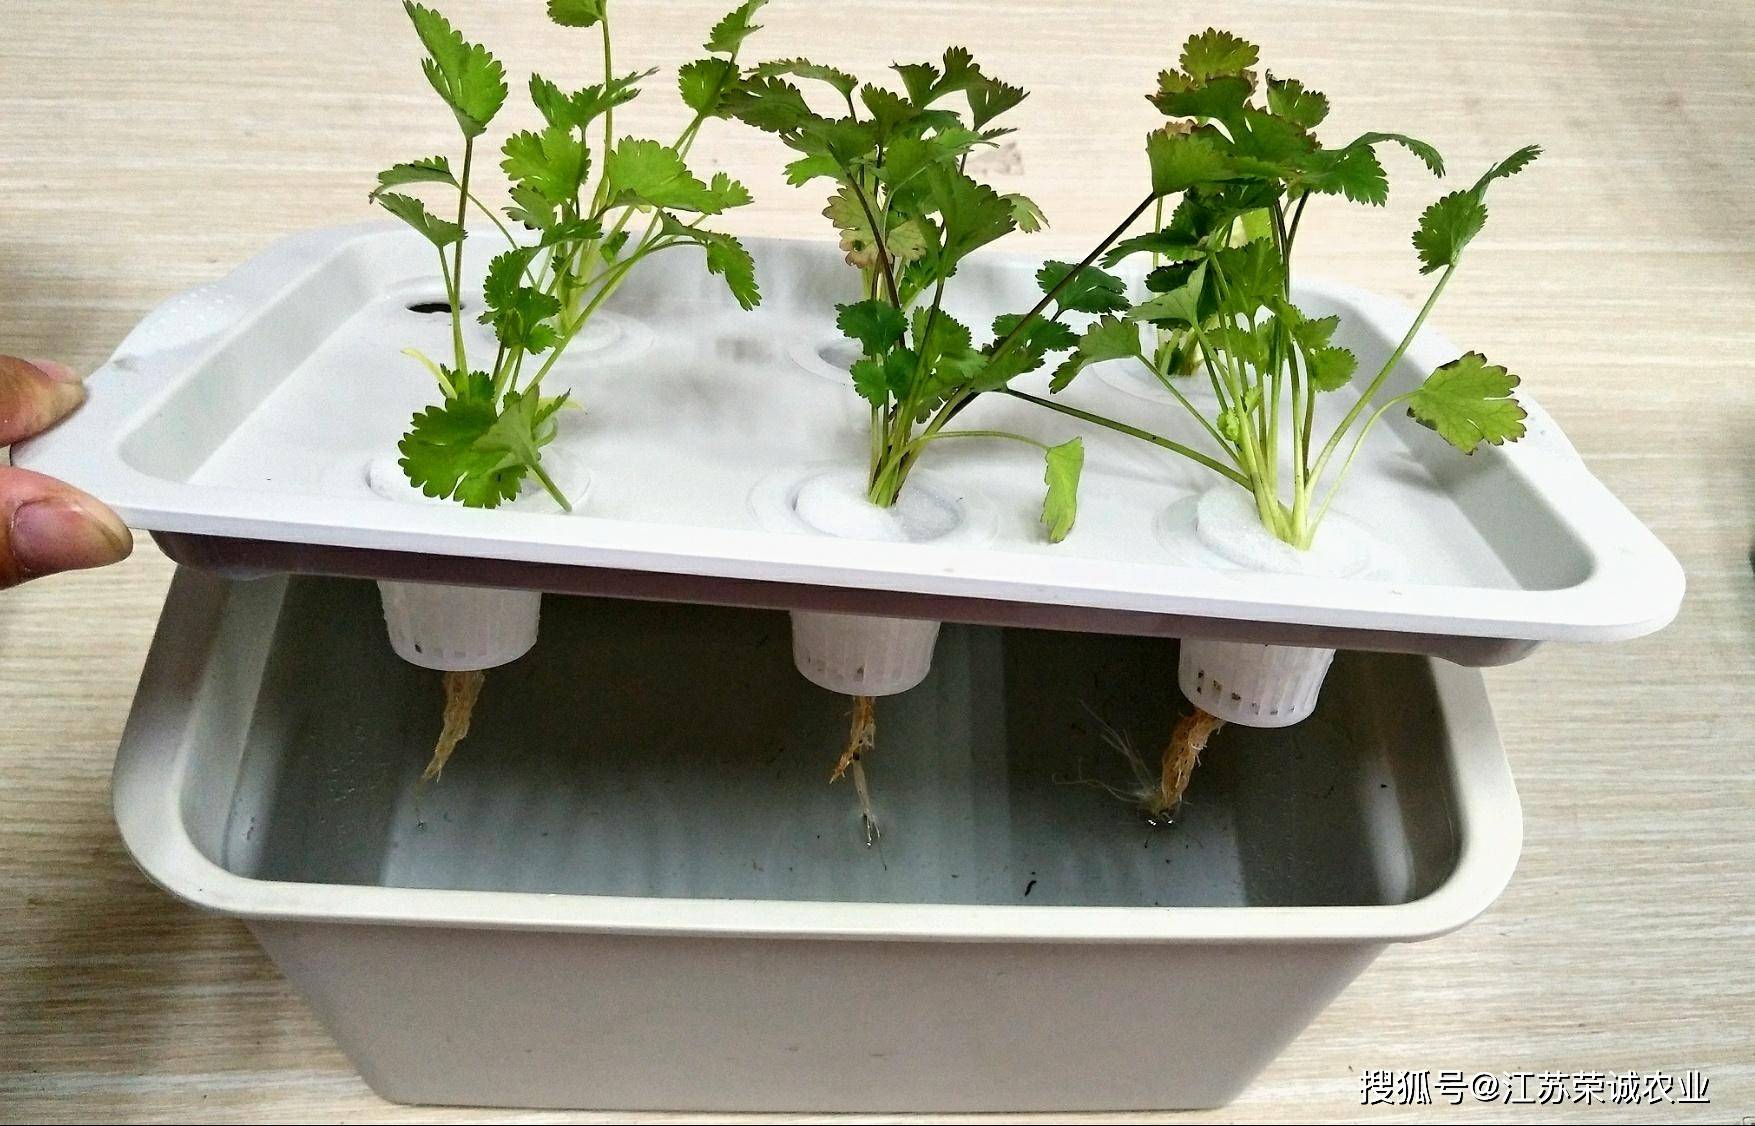 用了水培种植箱 让你分分钟学会阳台种菜 蔬菜